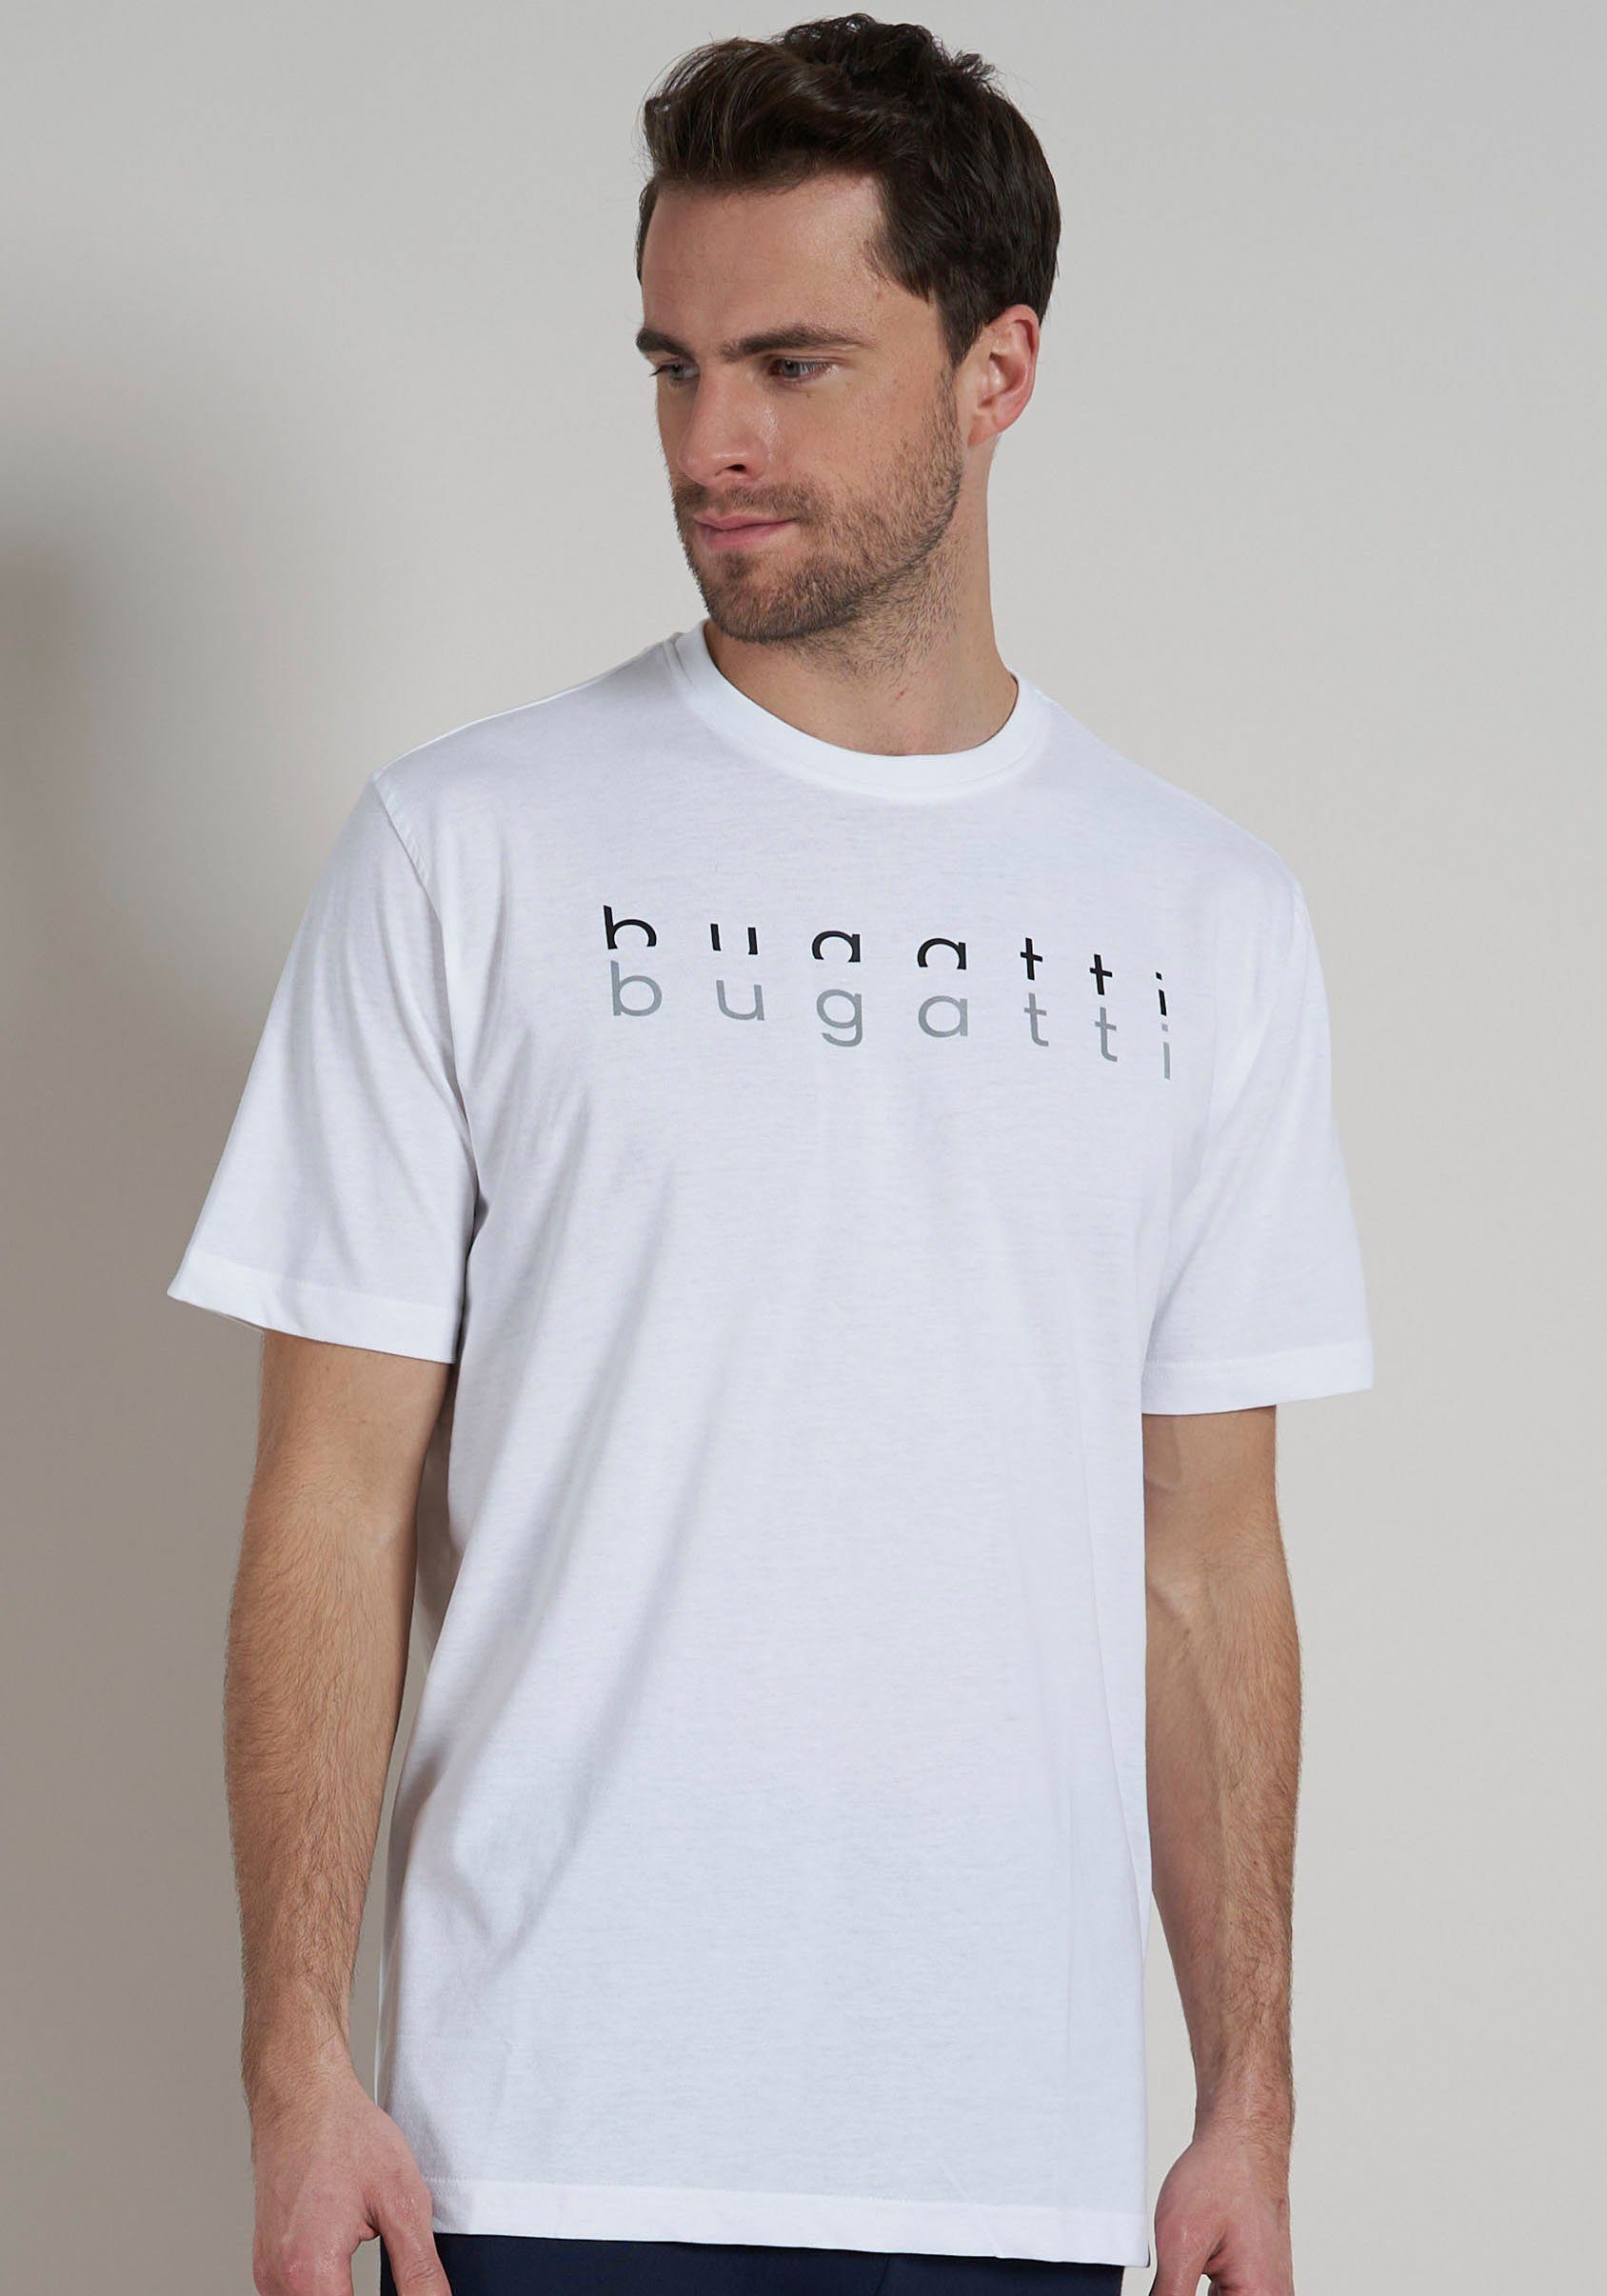 T-Shirt weiß-hell-uni bugatti